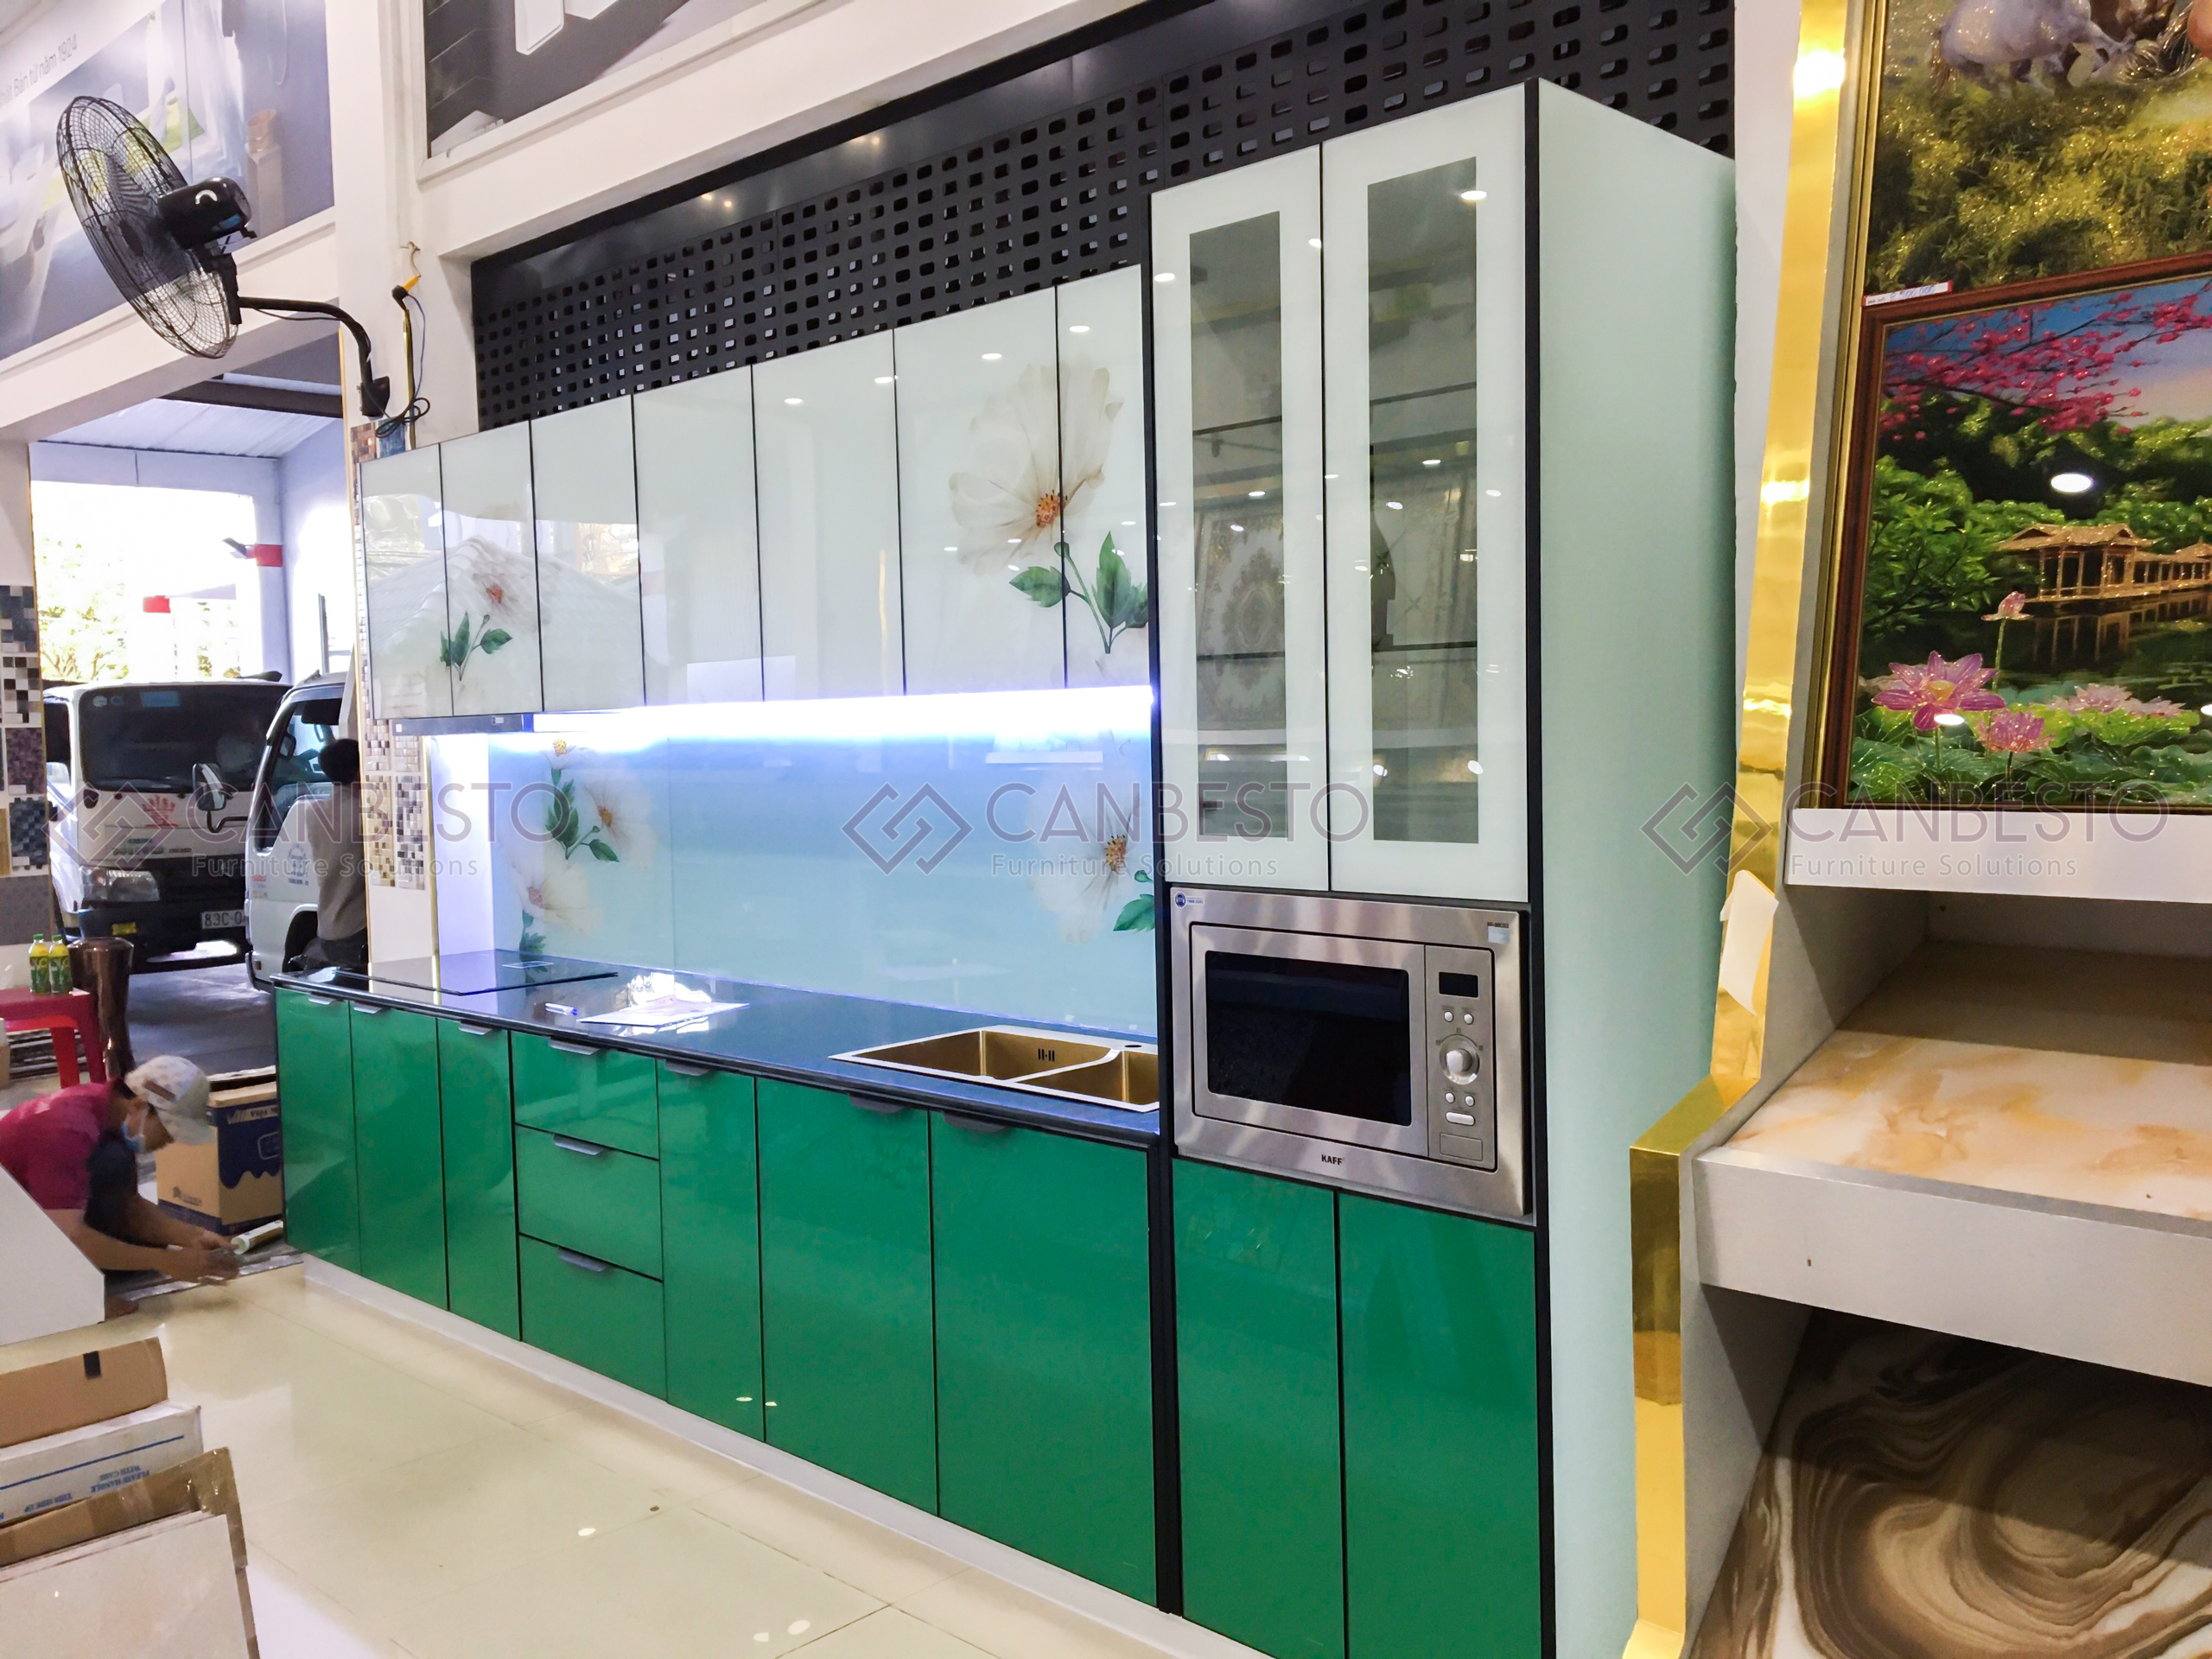 Tủ bếp nhôm kính, thiết kế nội thất tại Biên Hòa - Đồng Nai.